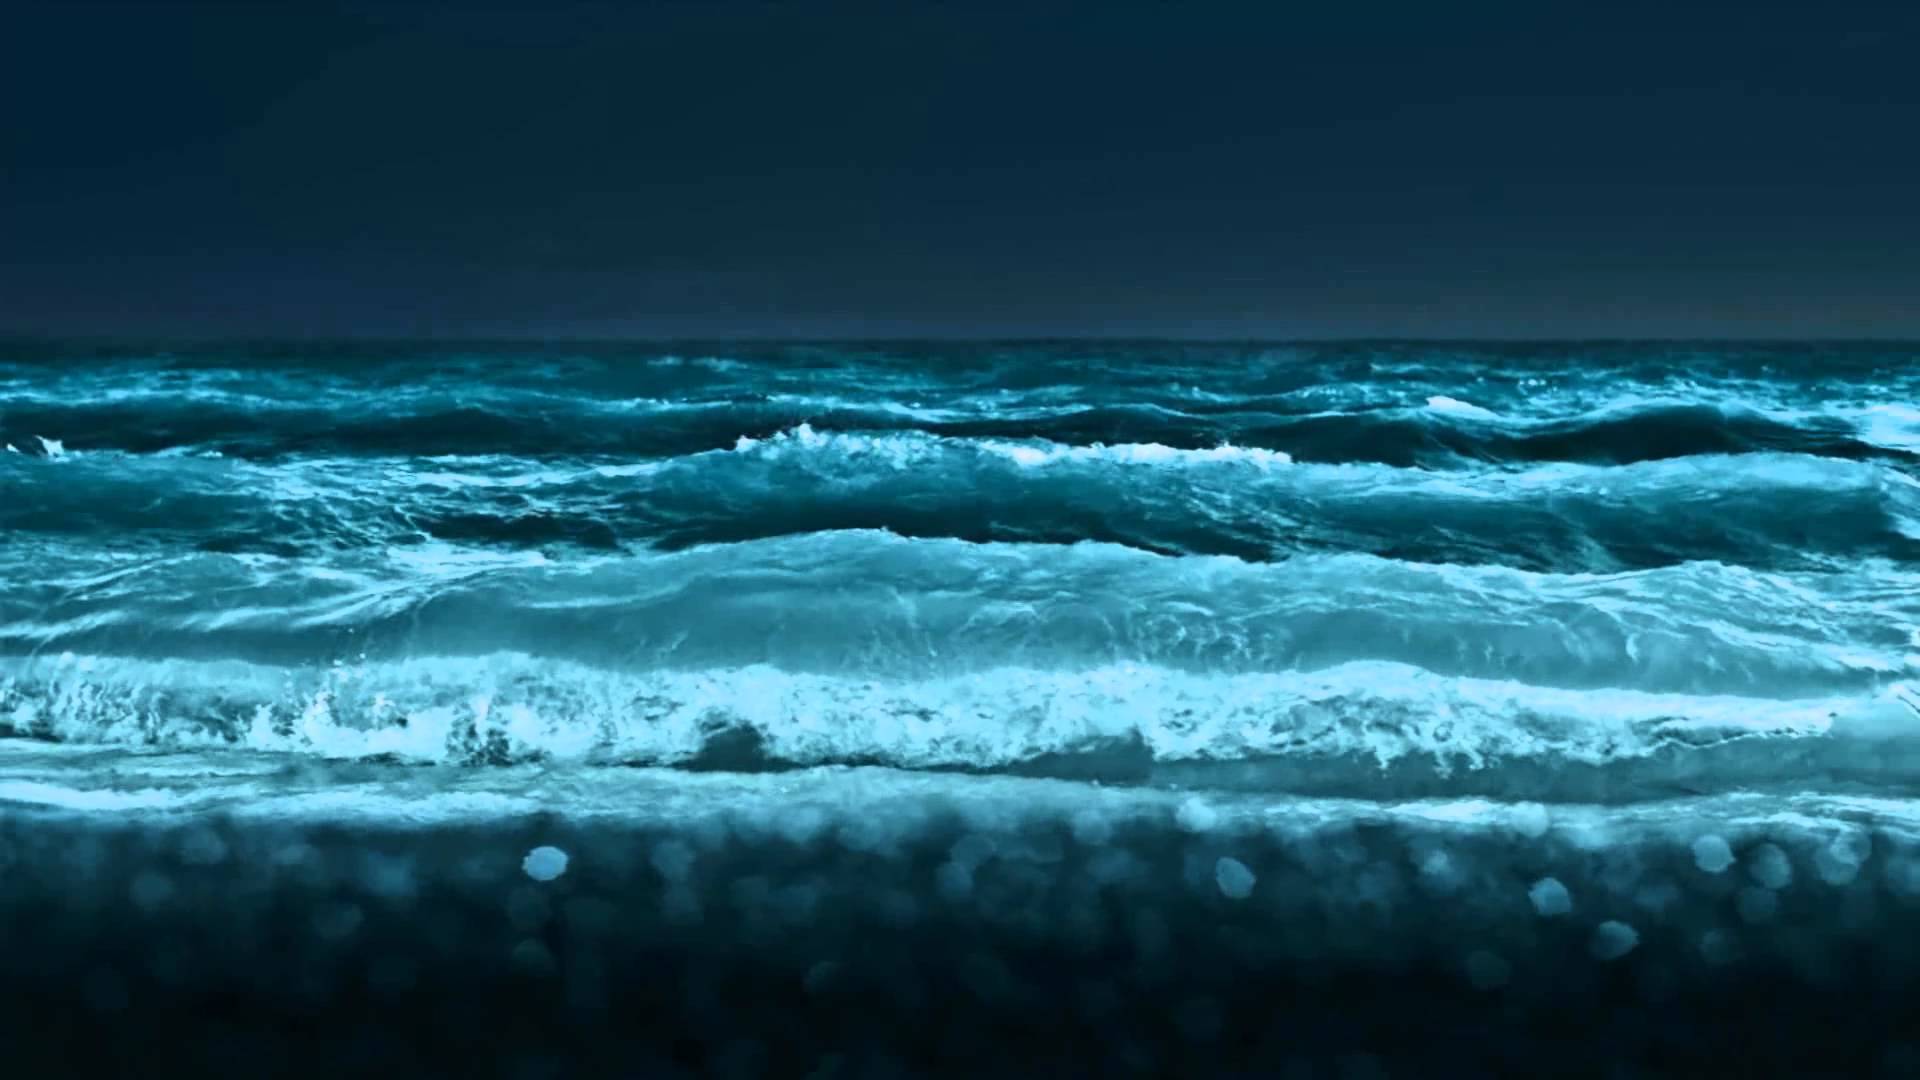 Ocean Waves Animated Wallpaper httpwwwdesktopanimatedcom